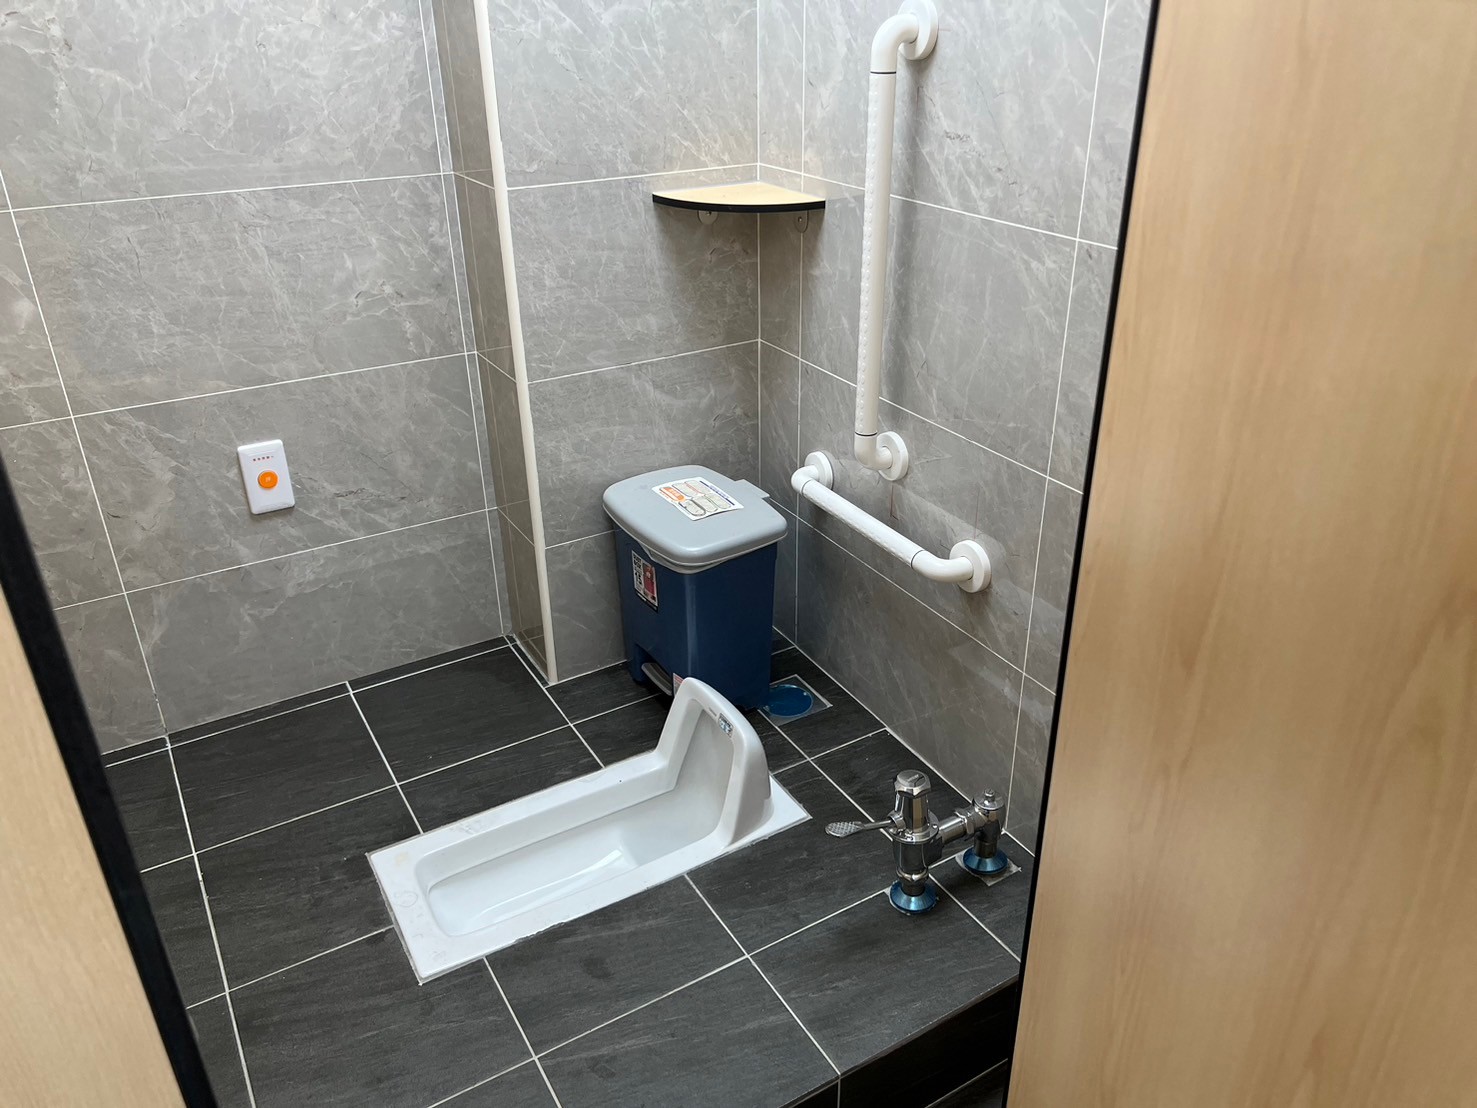 改善後廁間空間寬敞且清潔度提升